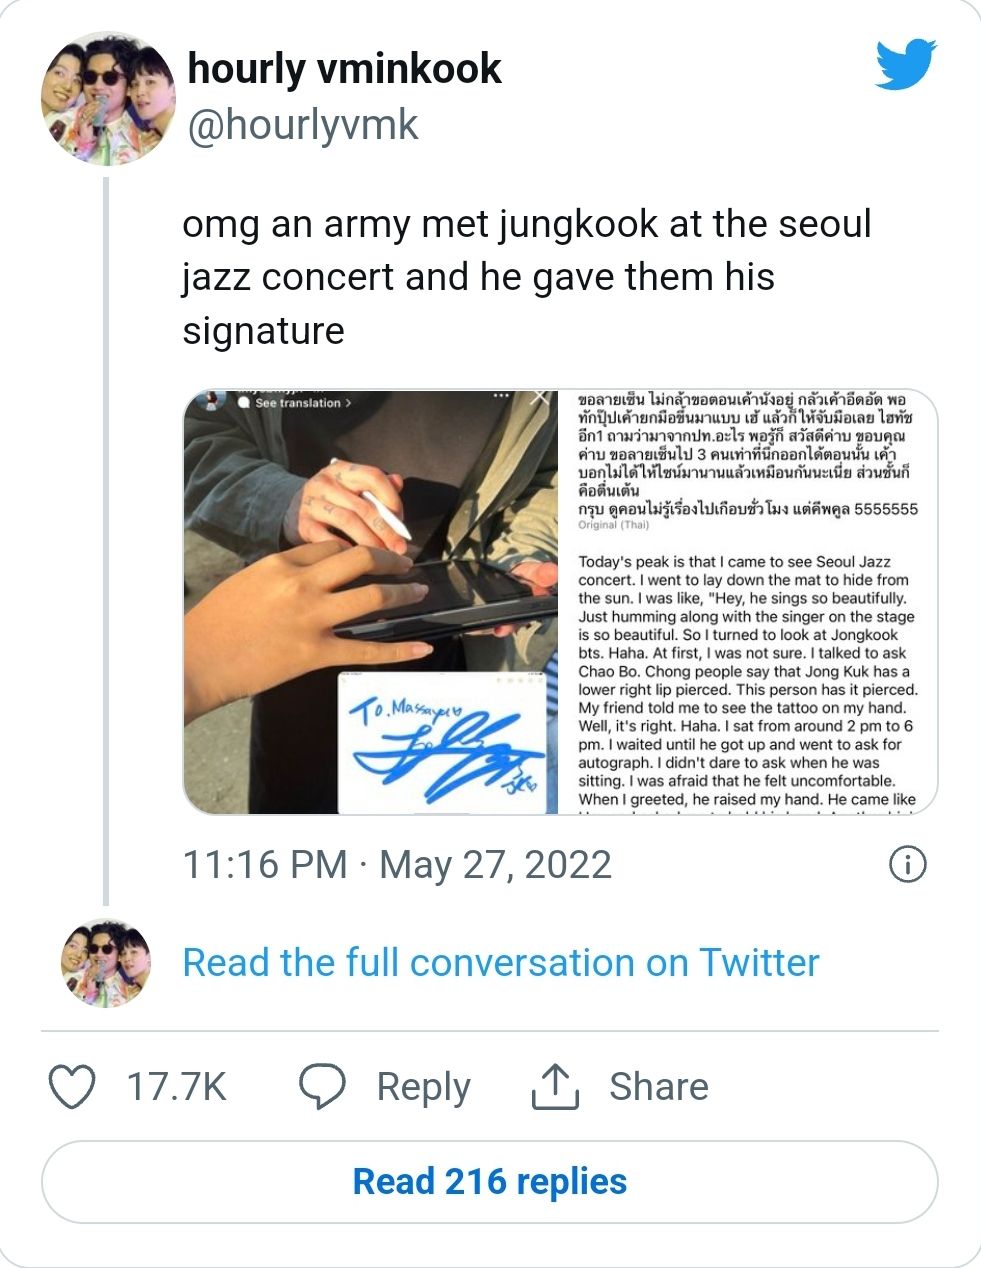 Postingan ARMY Thailand yang mengaku bertemu dengan Jungkook BTS di konser musik di Seoul, Korea, viral di media sosial./Twitter/@hourlyvmk